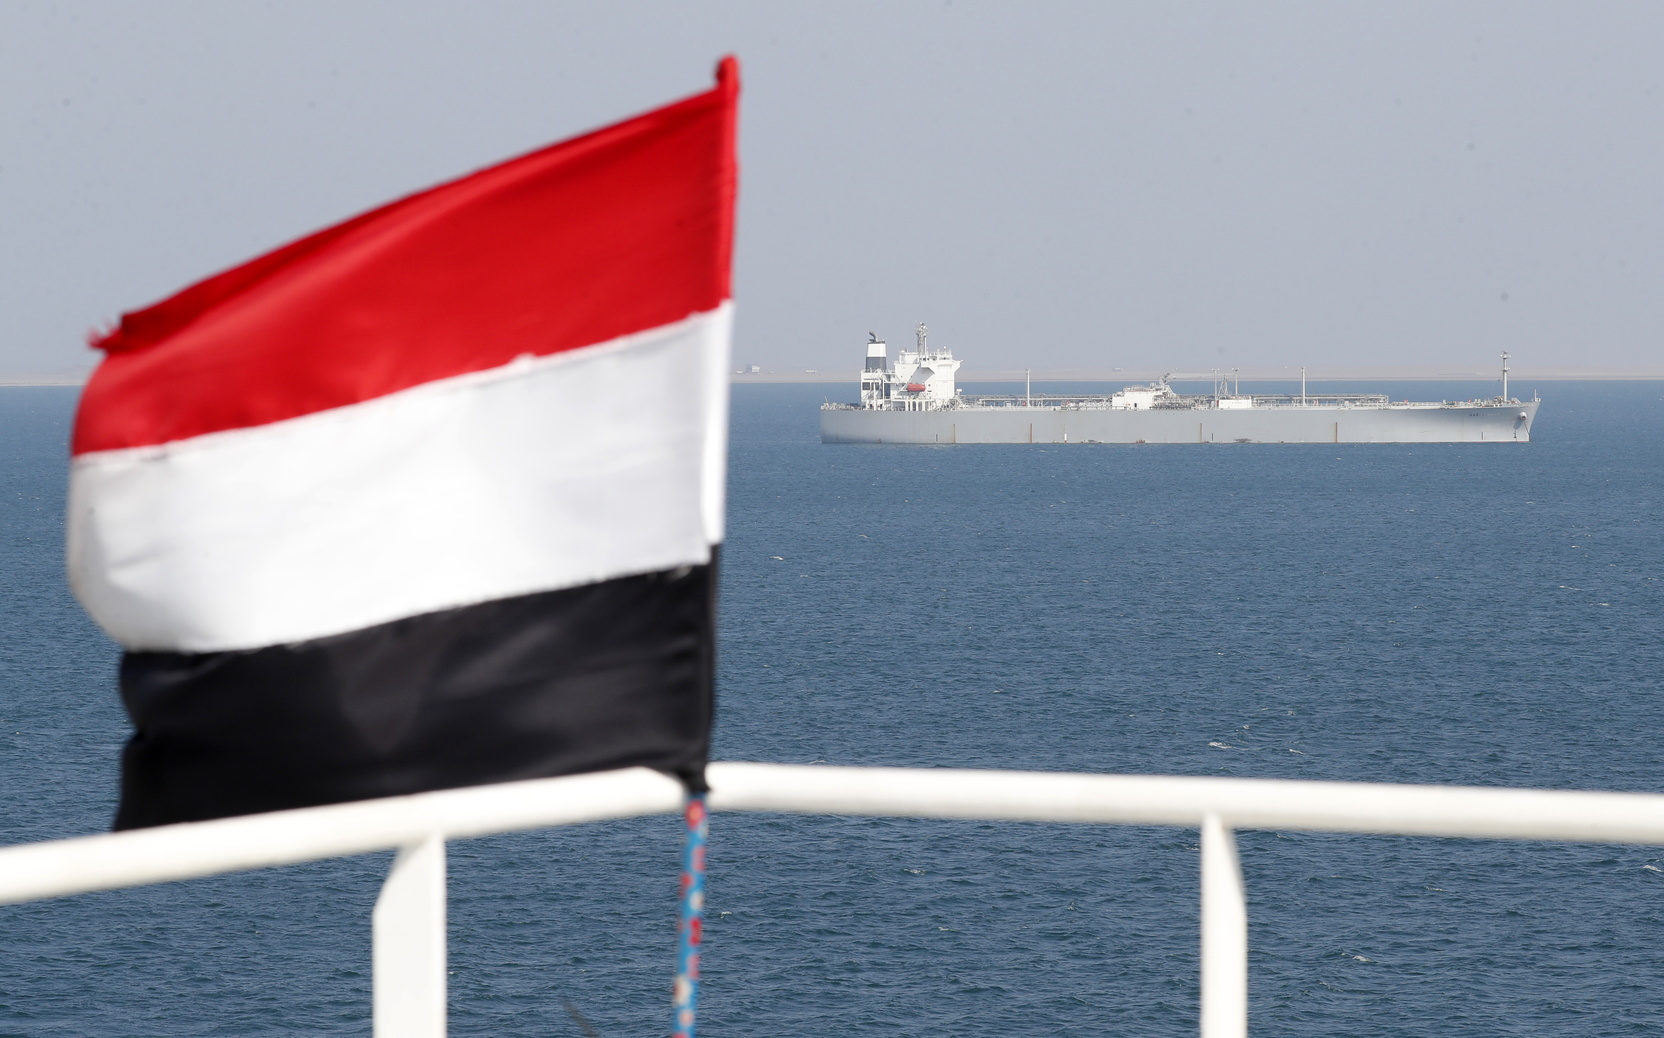 ВМС Британии сообщили о подозрительном сближении с судном недалеко от Йемена